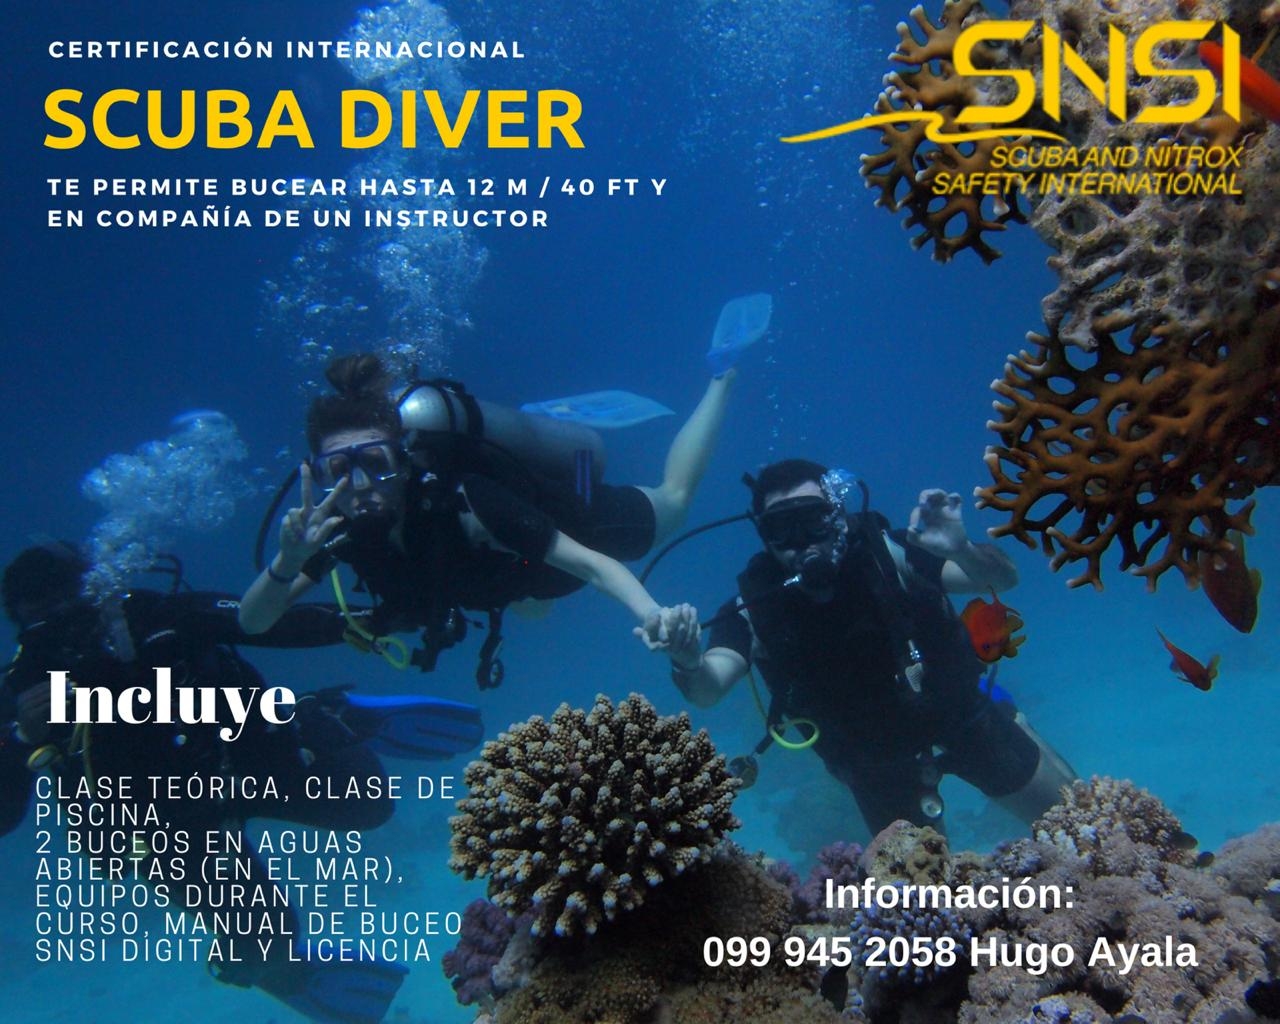 curso scuba diving buceo ecuador escuela mar abierto piscina programa completo galapagos salinas guayaquil